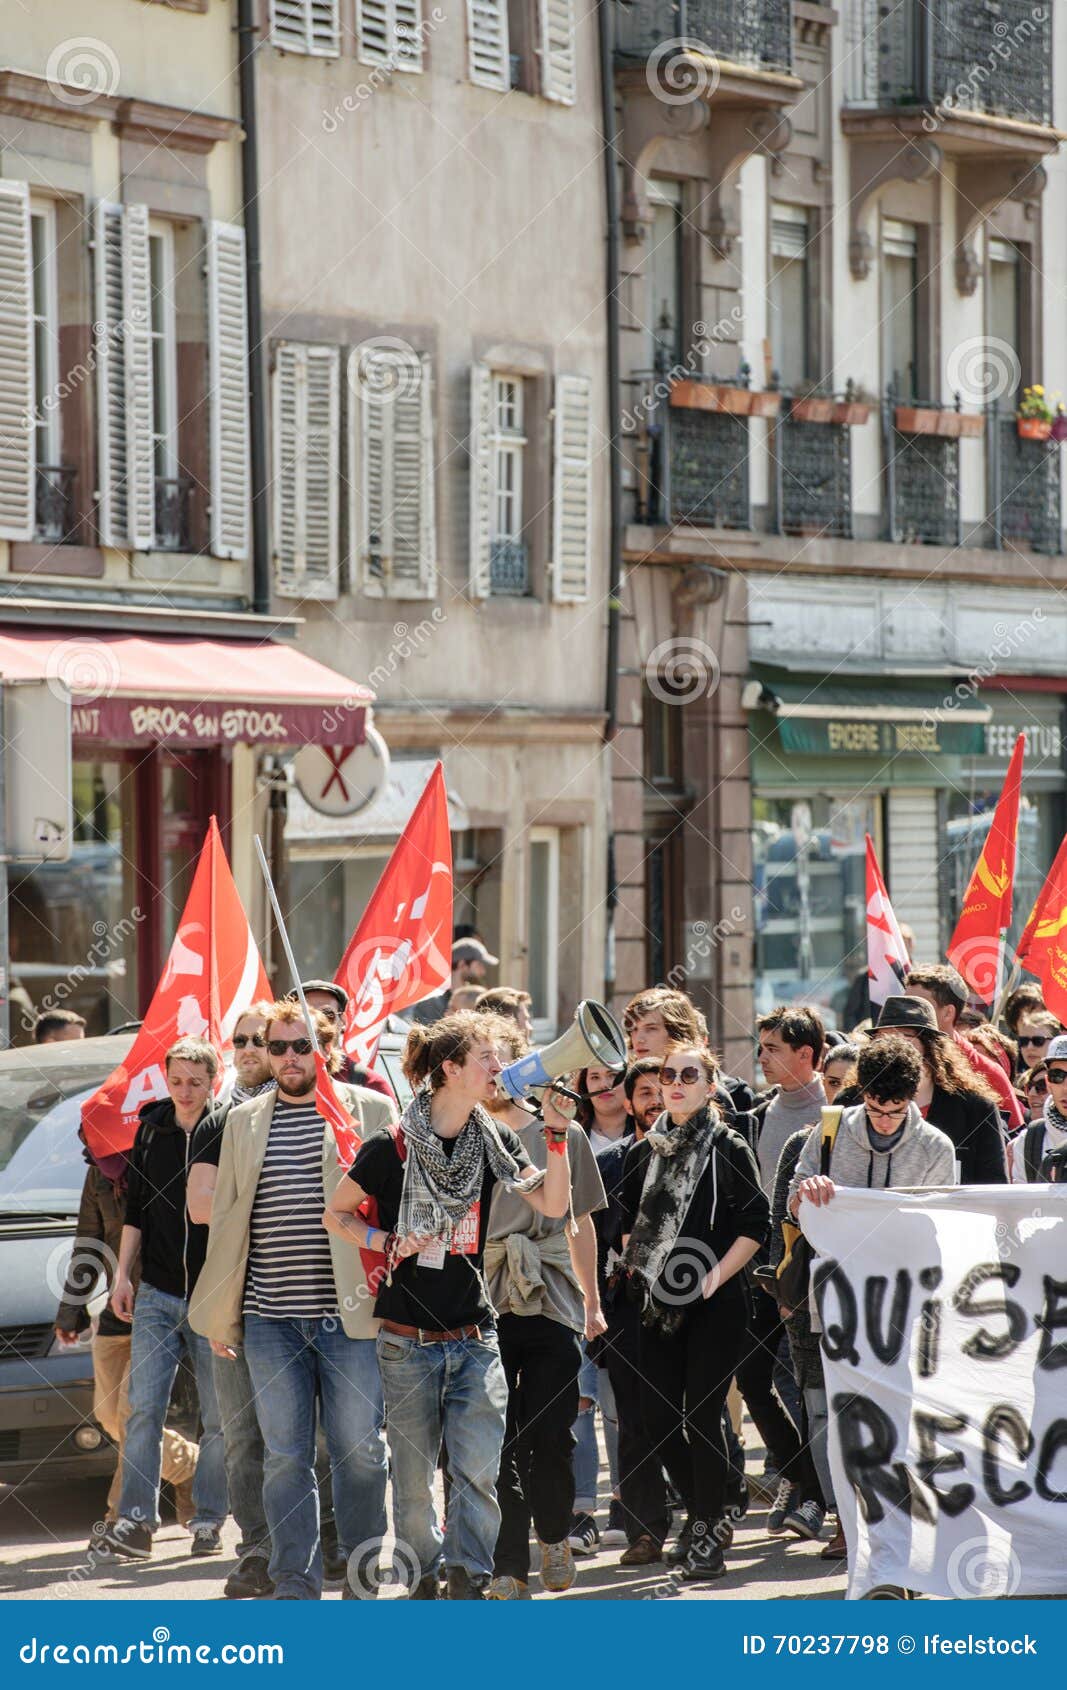 Διαμαρτυρία Απριλίου ενάντια στις μεταρρυθμίσεις εργασίας στη Γαλλία. ΣΤΡΑΣΒΟΥΡΓΟ, ΓΑΛΛΙΑ - 20 ΑΠΡΙΛΊΟΥ 2016: Η κλειστή κύρια οδός του Στρασβούργου ως εκατοντάδες των ανθρώπων καταδεικνύει ως τμήμα της σε εθνικό επίπεδο ημέρας της διαμαρτυρίας ενάντια στις προτεινόμενες μεταρρυθμίσεις εργασίας από τη σοσιαλιστική κυβέρνηση